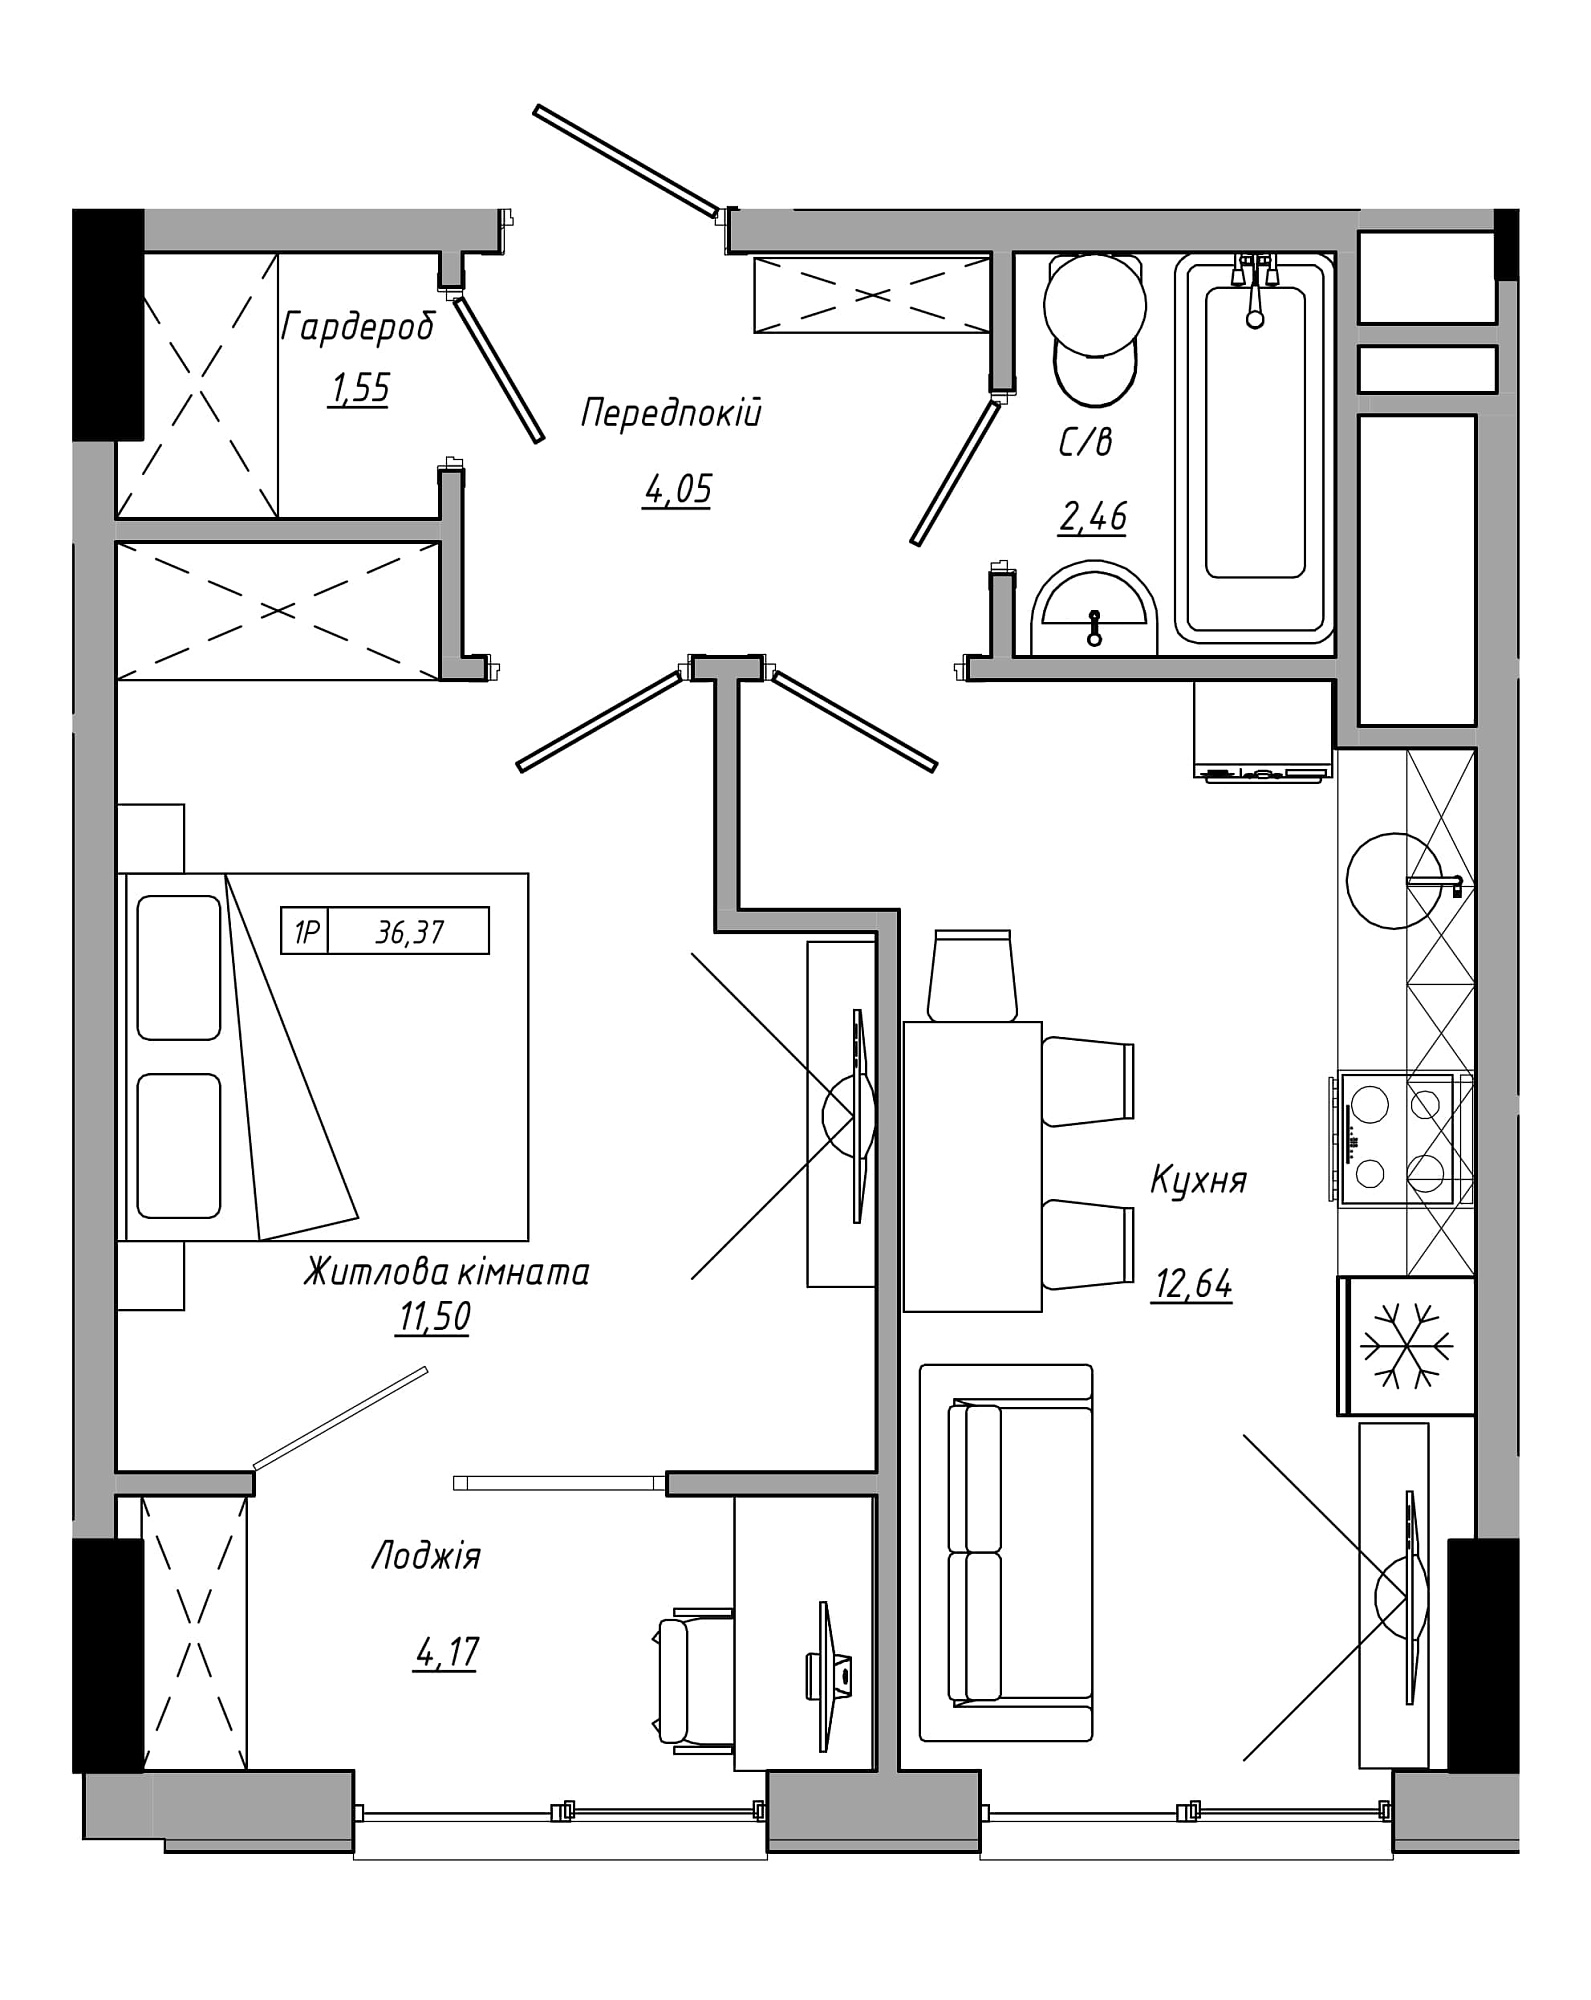 Планування 1-к квартира площею 36.37м2, AB-21-12/00020.